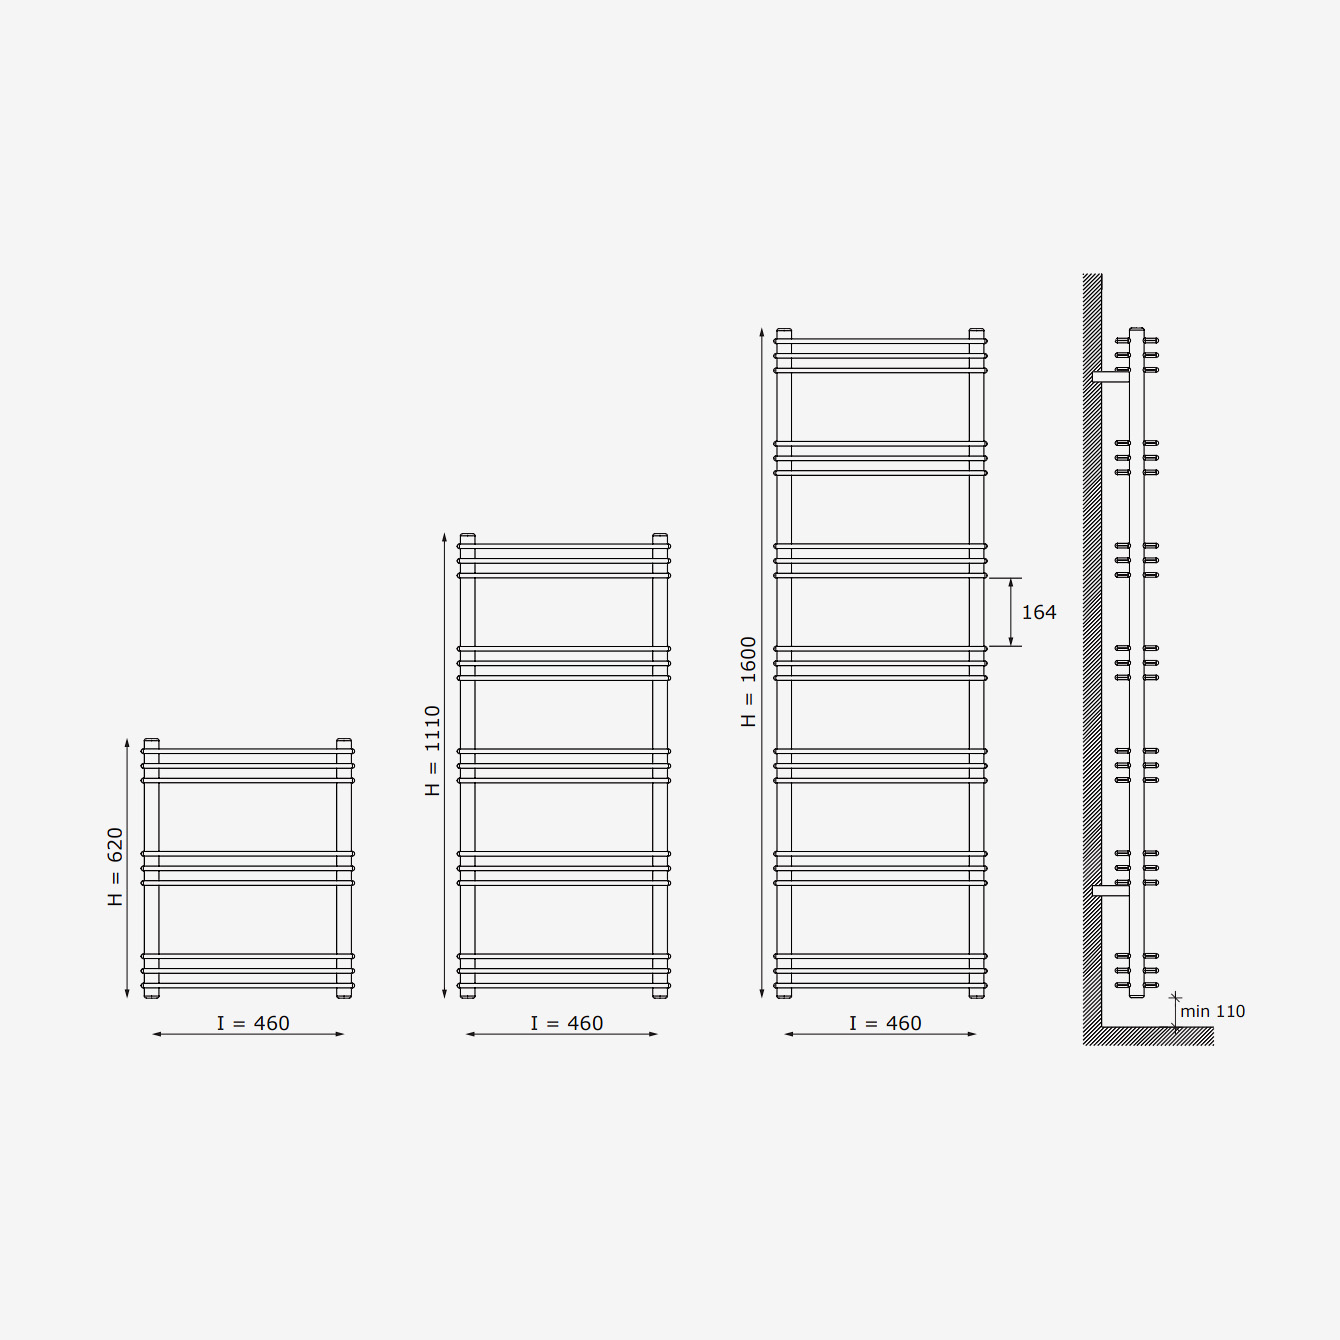 Shelf 35 - Modernes CALEIDO Heizkörper-Regal von James Di Marco | Radiamo